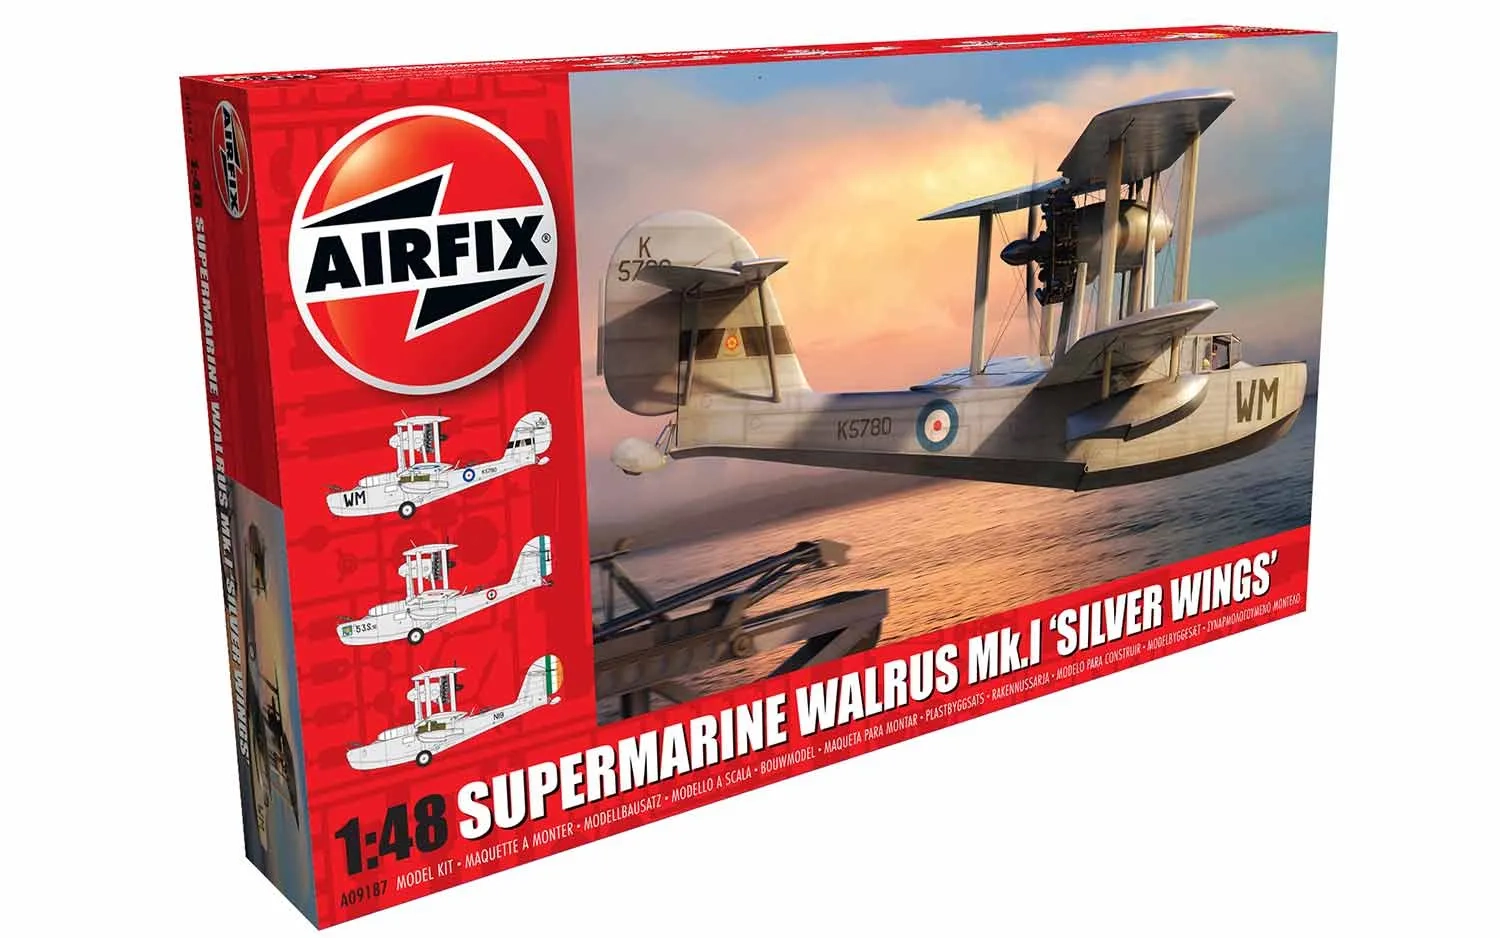 Supermarine Walrus Mk.1 'Silver Wings'